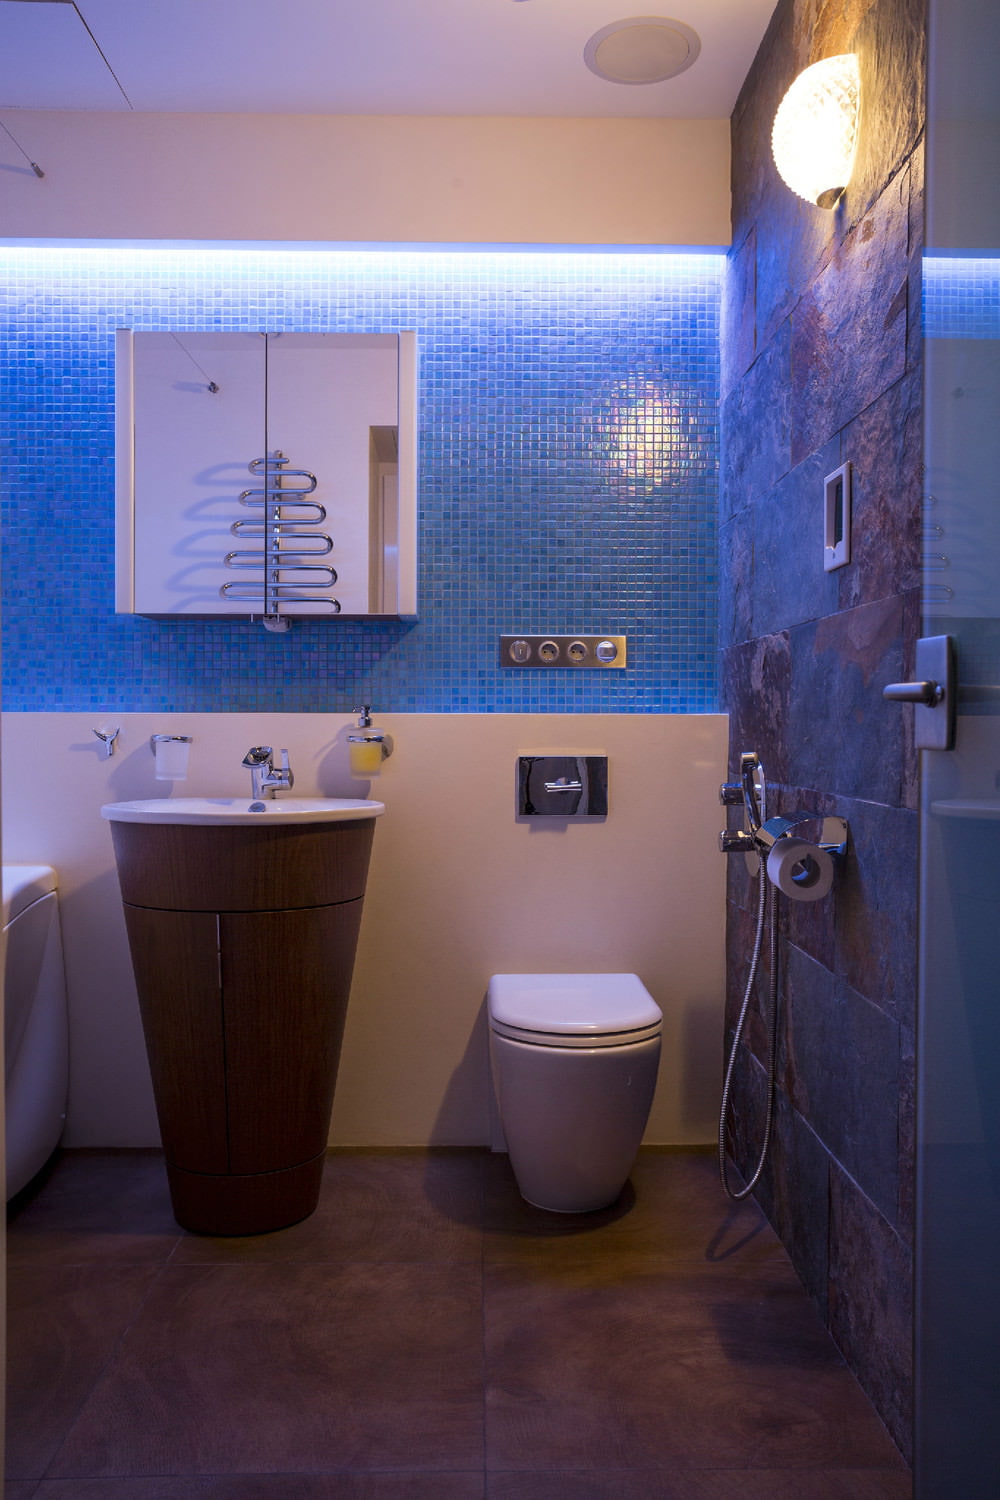 ห้องน้ำในการออกแบบอพาร์ทเมนต์สองห้องขนาด 43 ตร.ม. เมตร